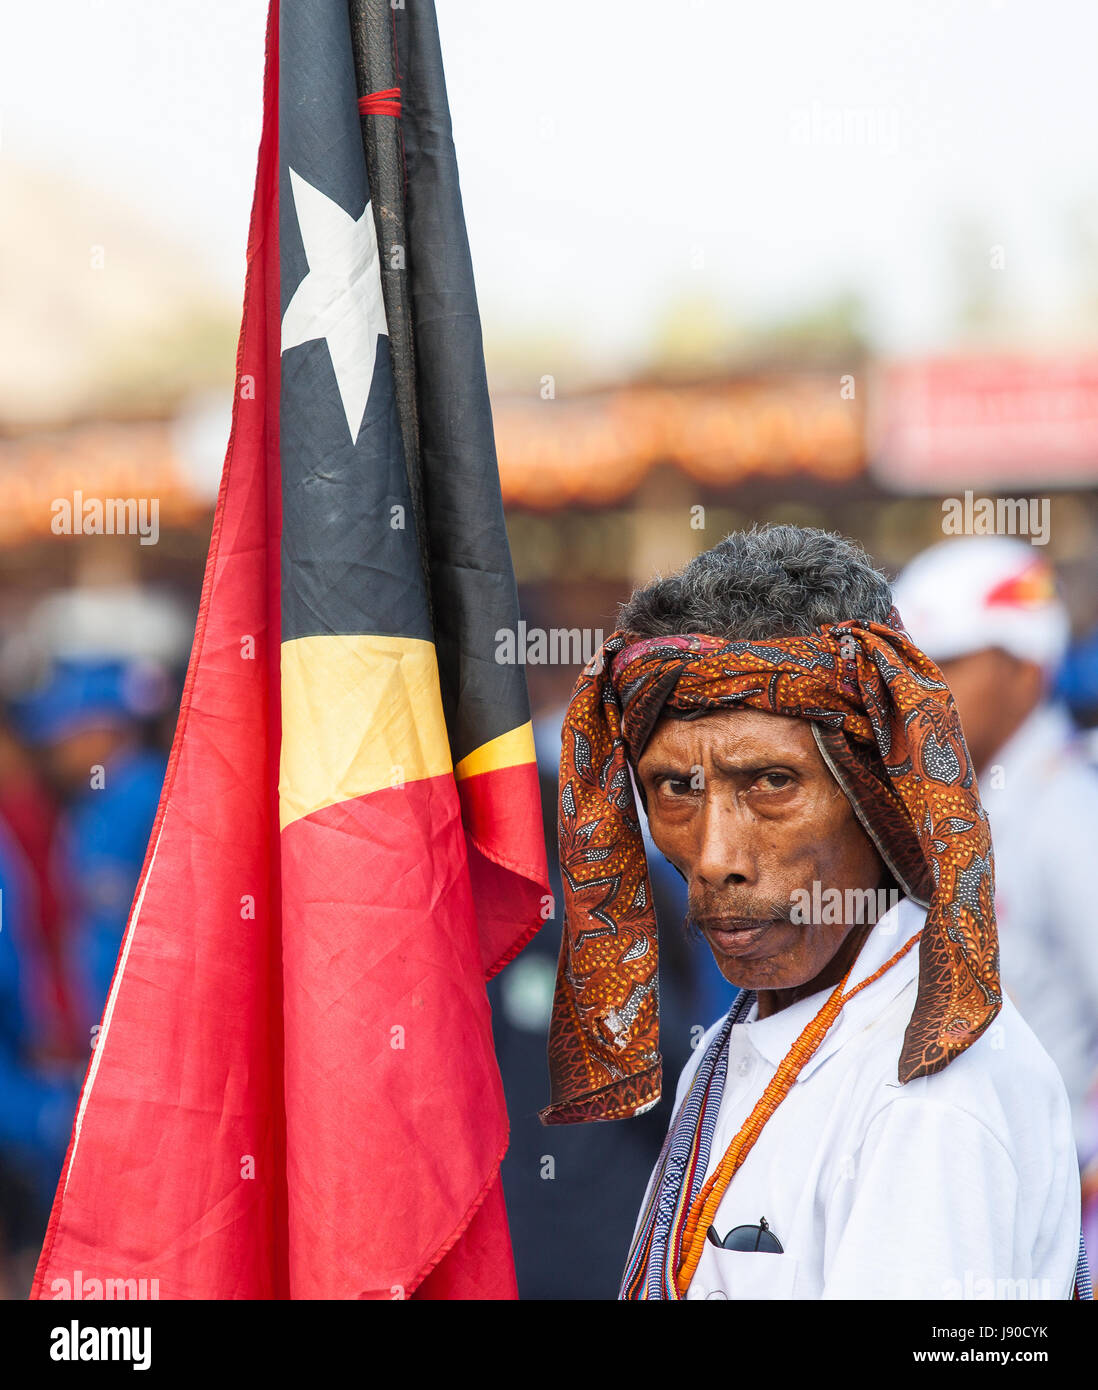 Dili, Timor oriental. L'homme en costume traditionnel tenant un drapeau du Timor oriental Banque D'Images